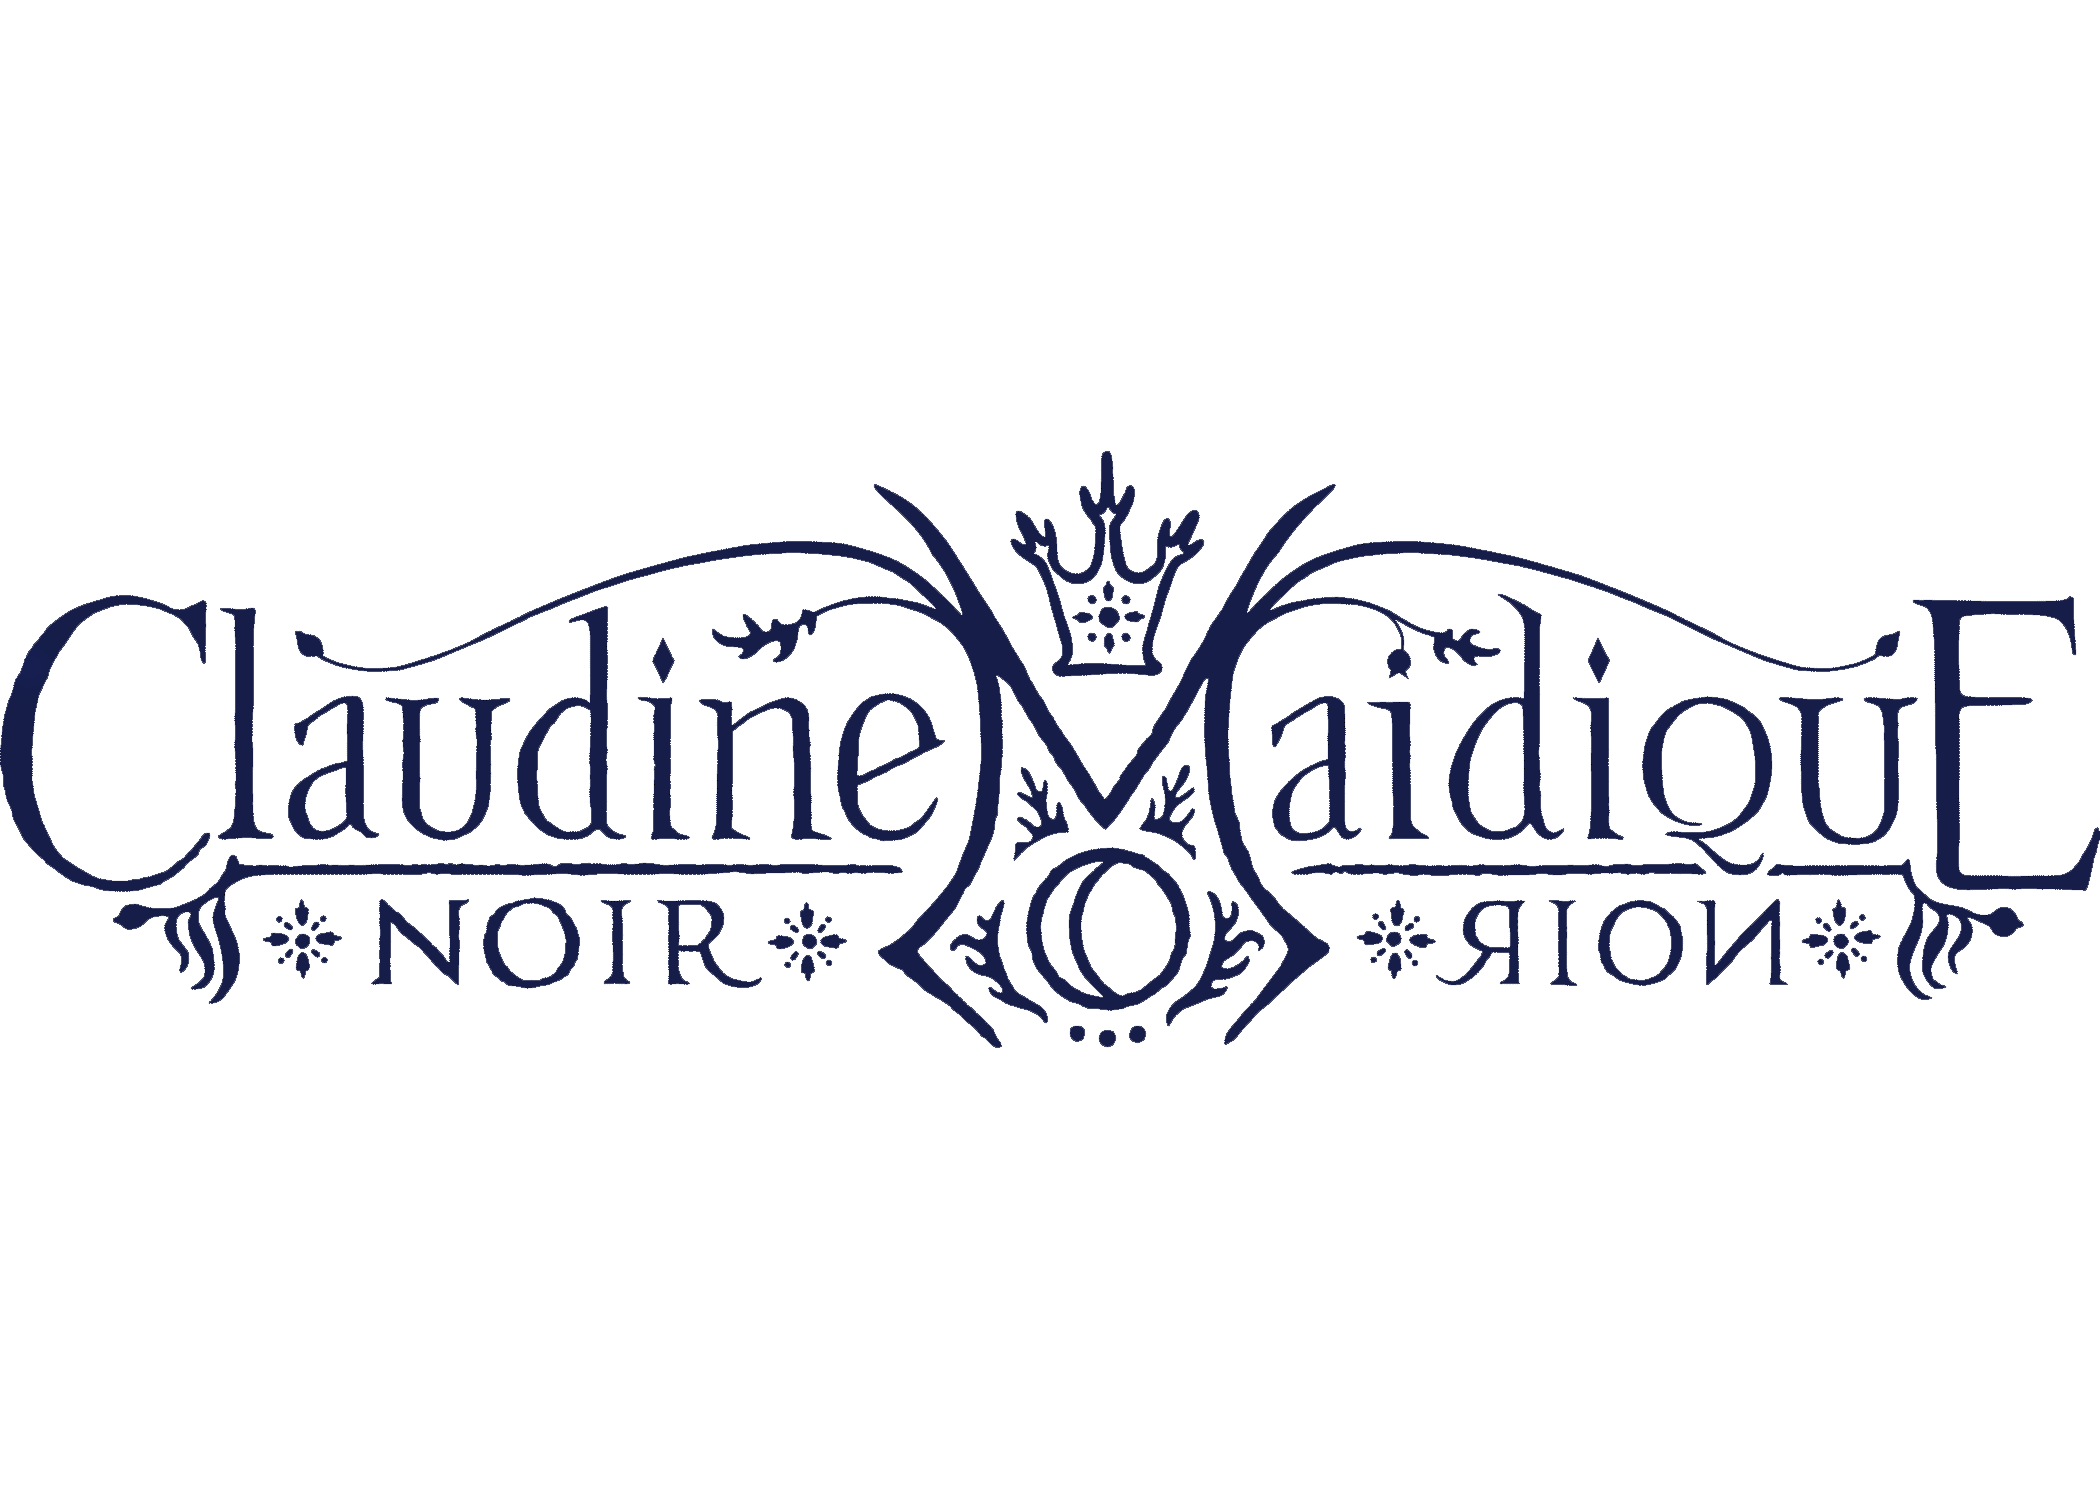  Claudine Maidique